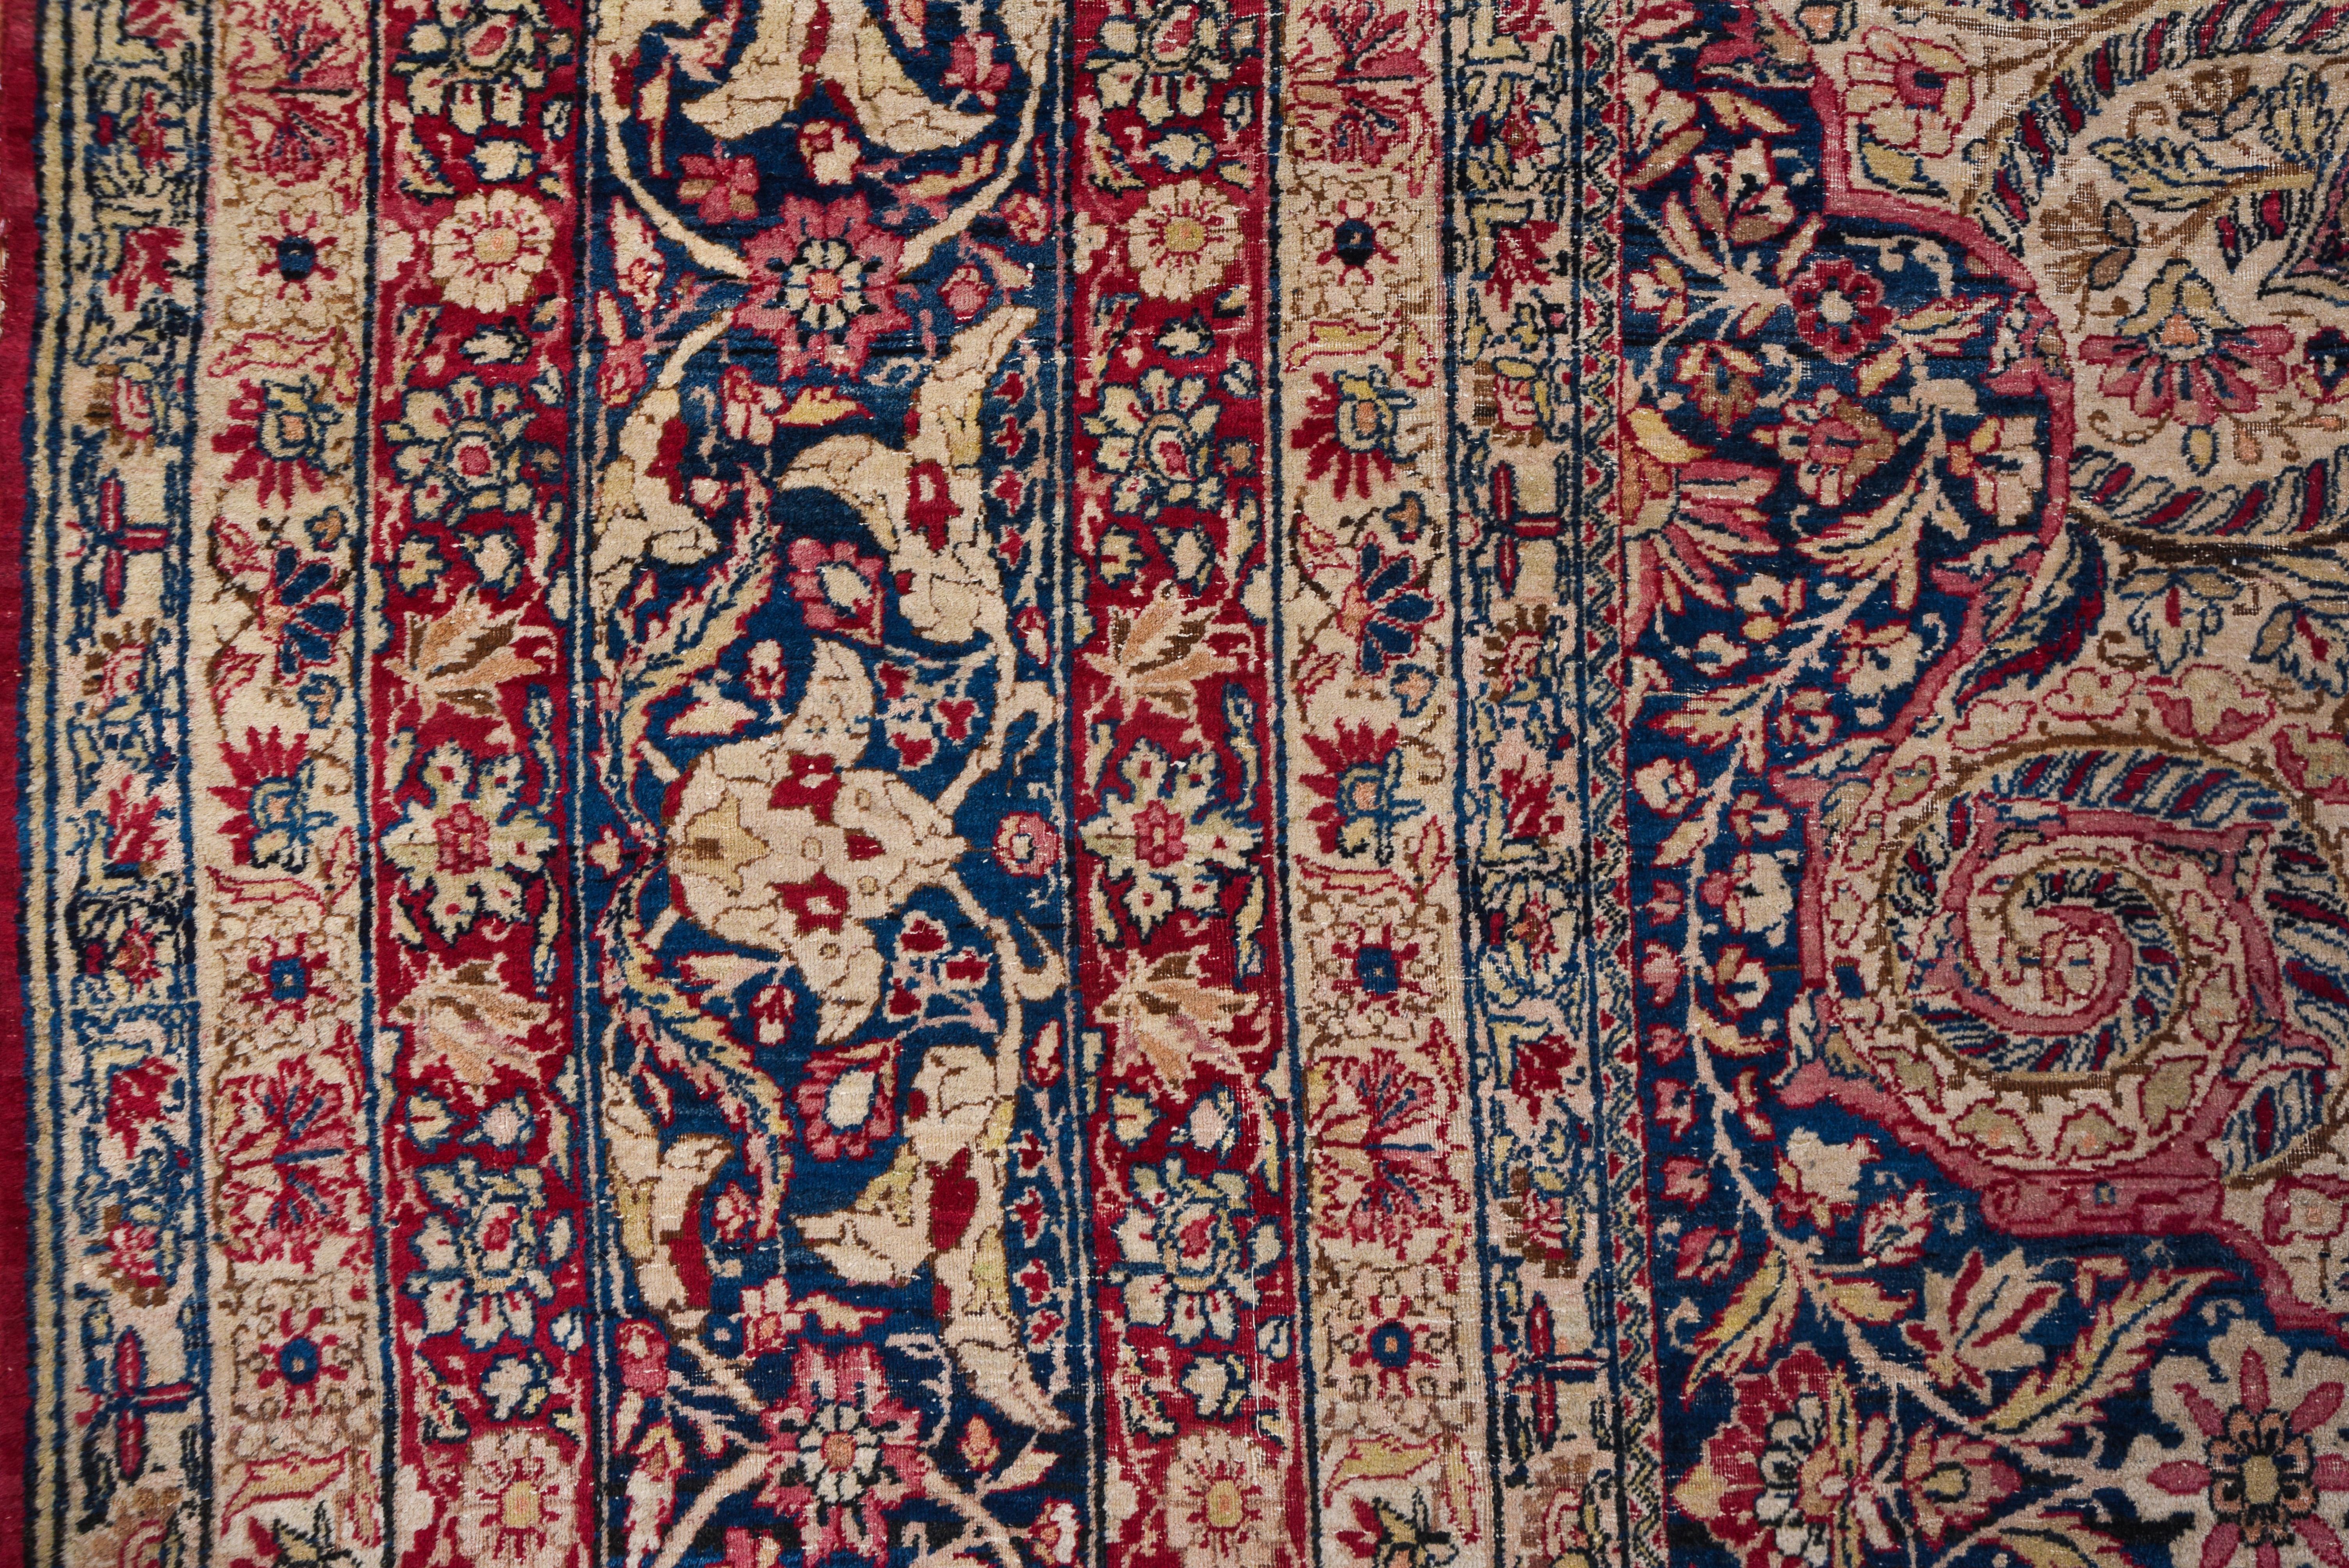 Antique Colorful Persian Lavar Kerman Carpet, Colorful Palette, Center Medallion 1